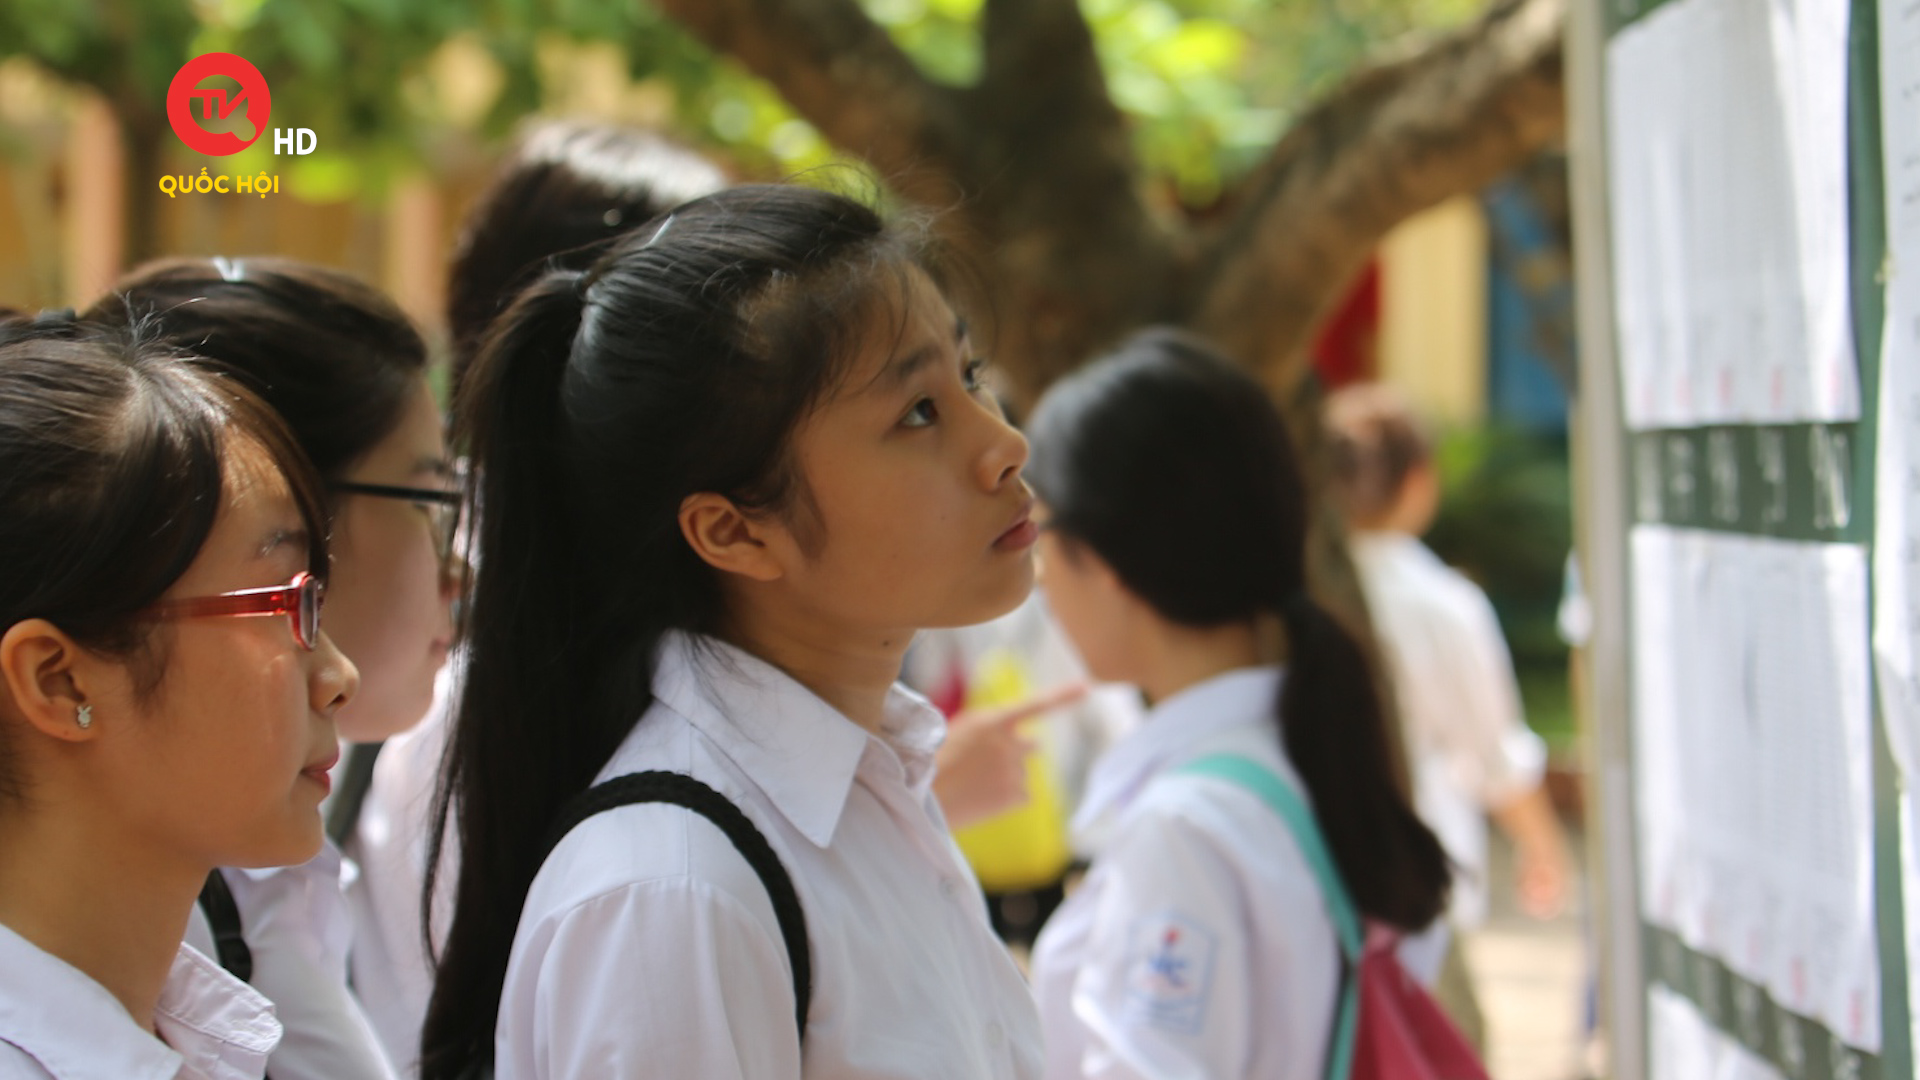 Học sinh Việt Nam: "Toán khó làm tốt, dễ thì không"